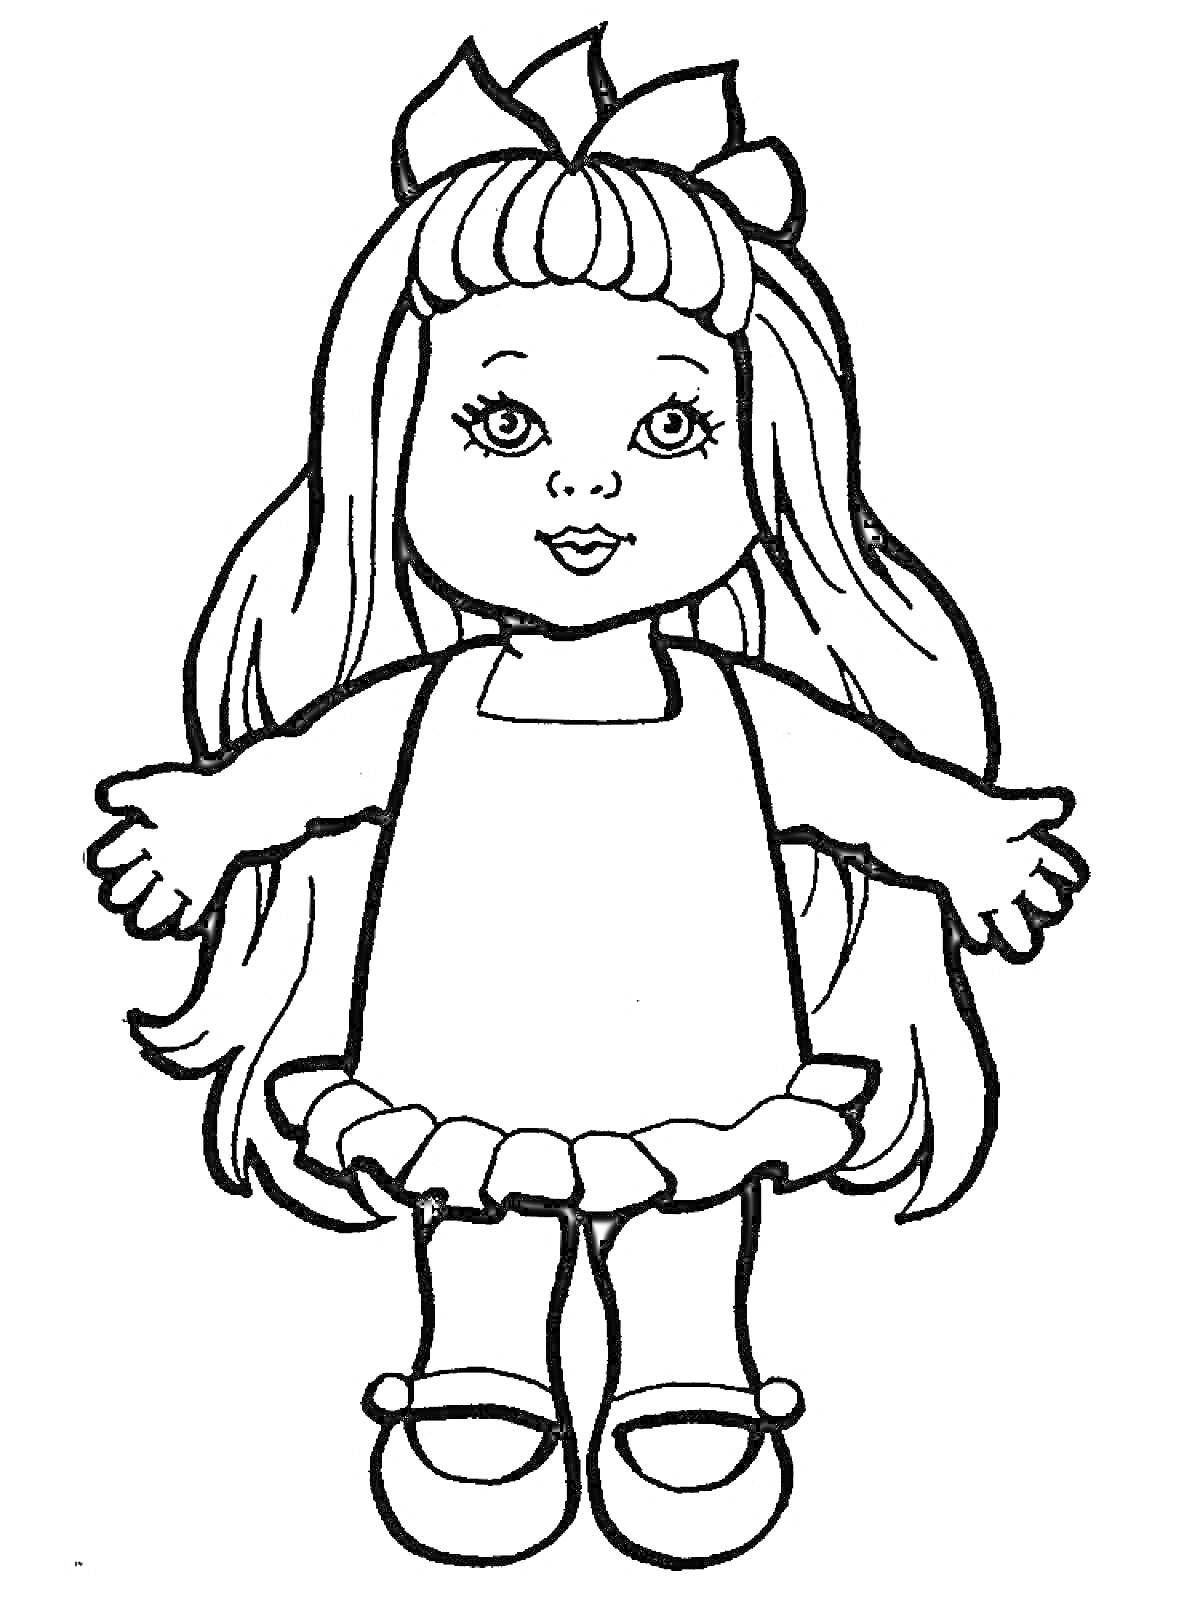 Кукла с длинными волосами, в платье с рюшами и бантом на голове